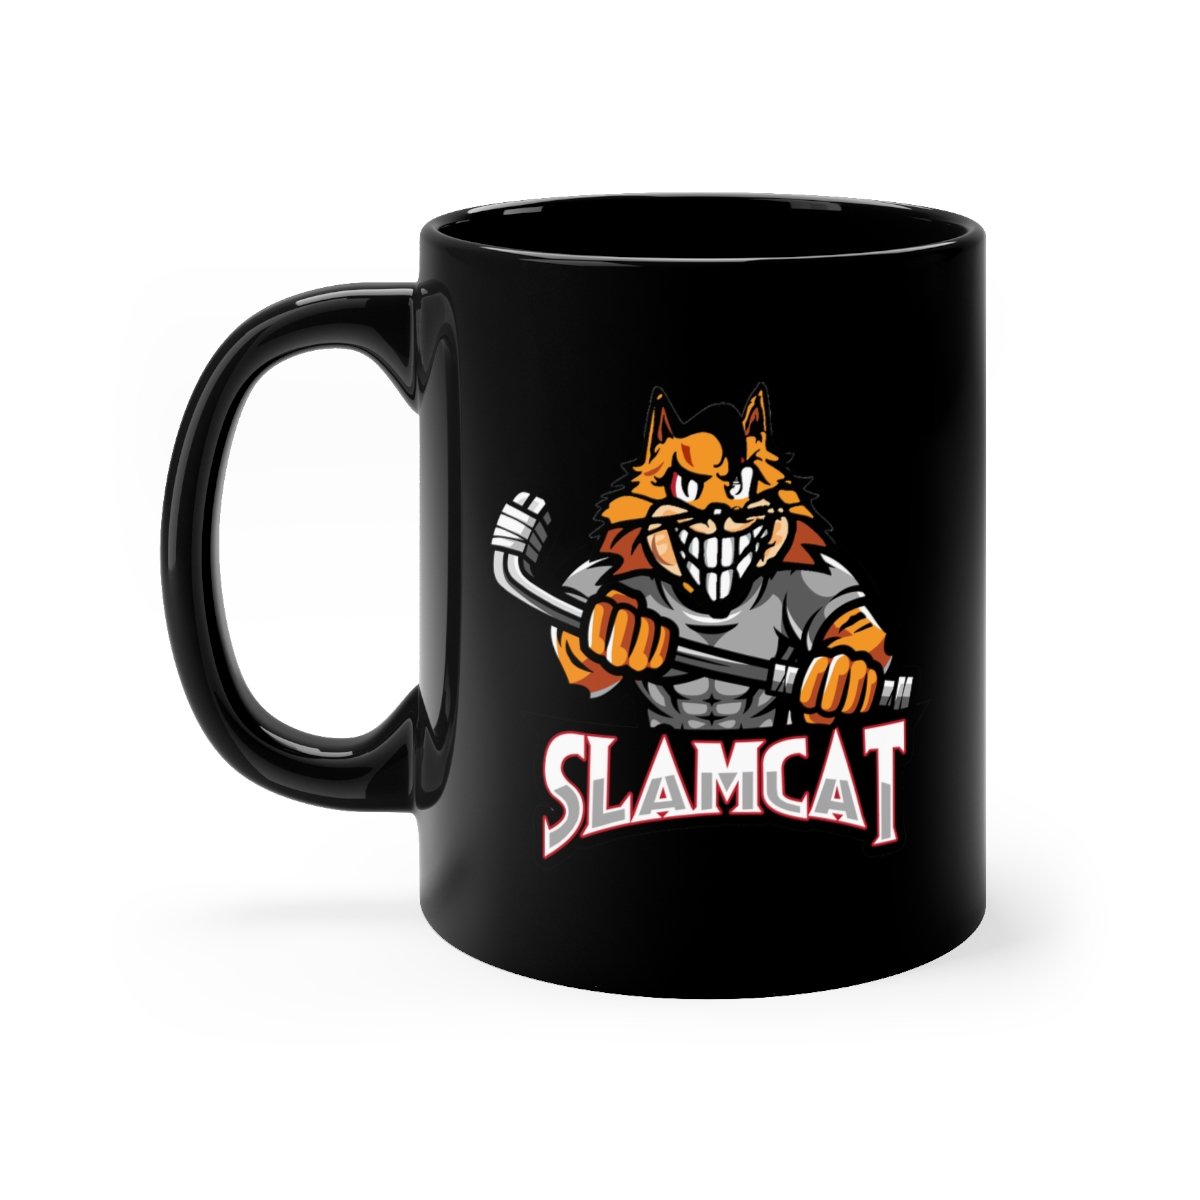 Slamcat 11oz Black mug